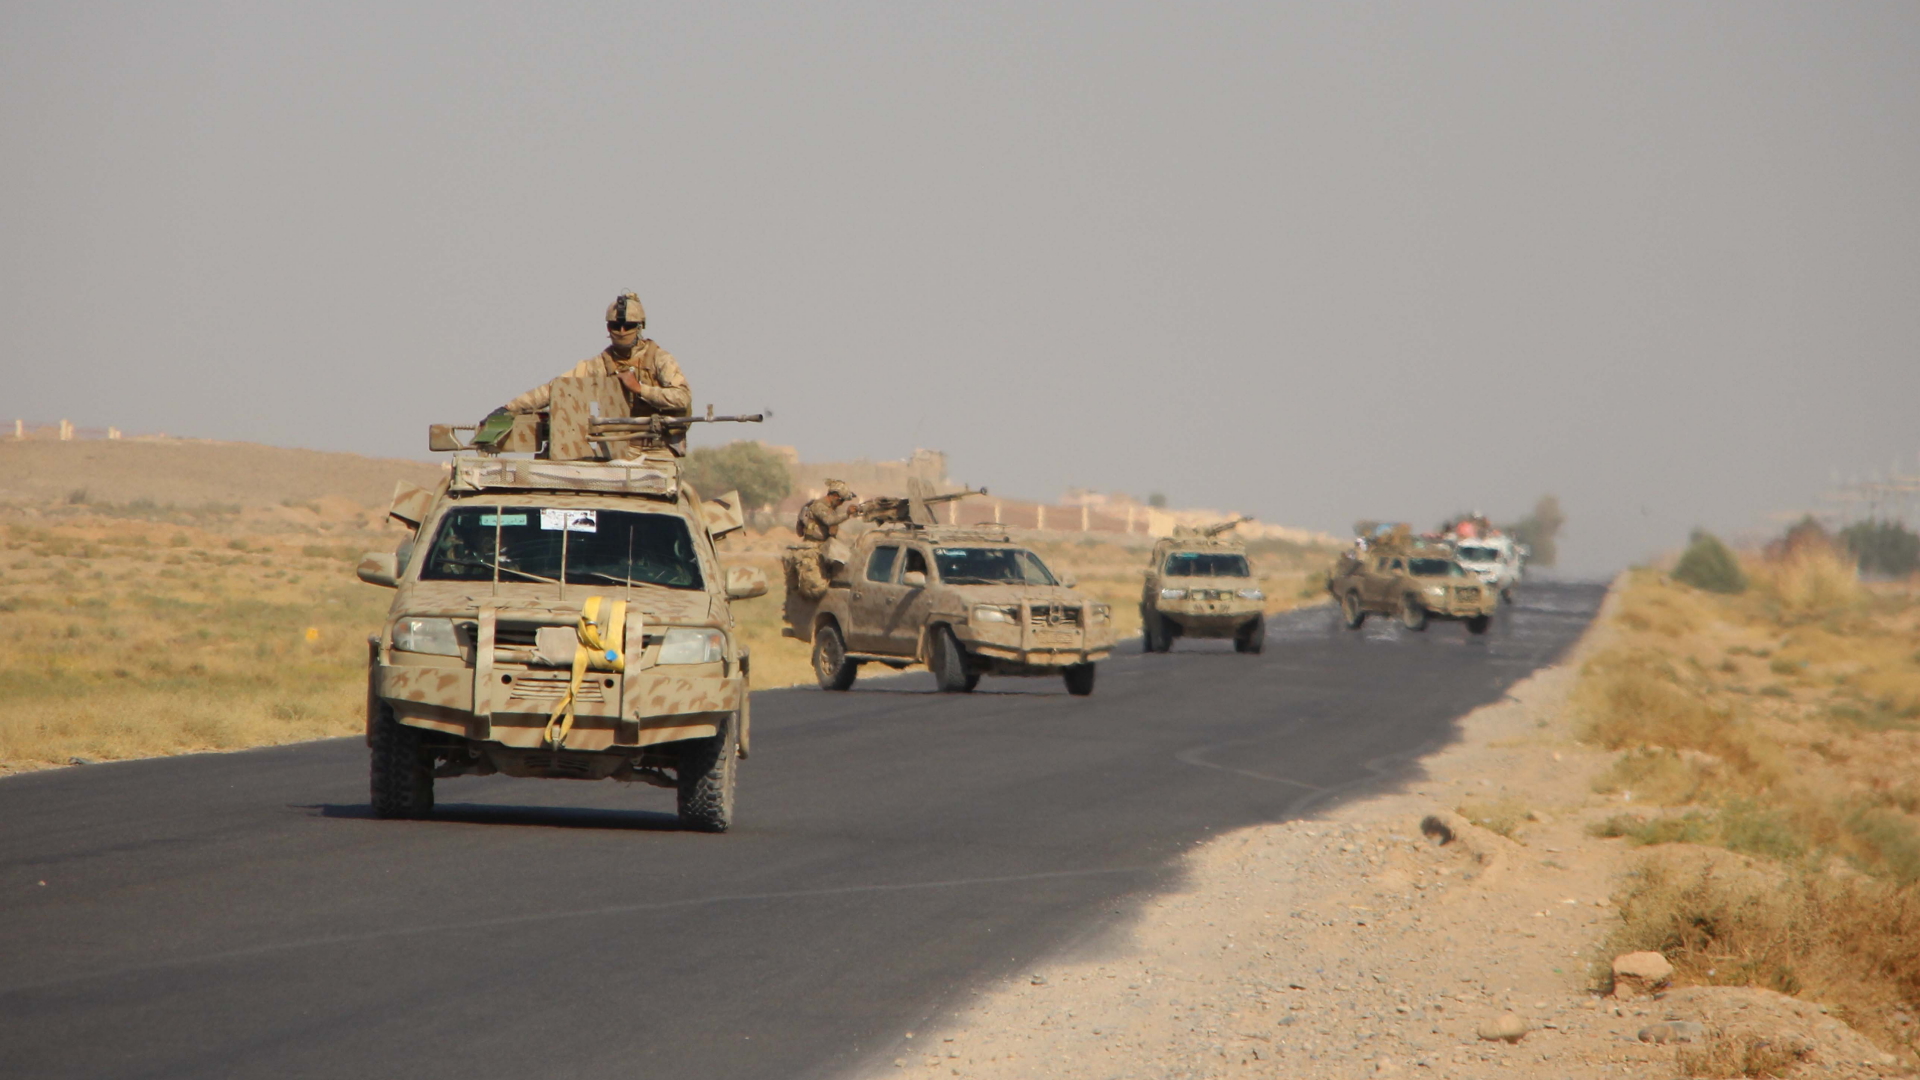 Afghanische Sicherheitskräfte patrouillieren in Autos. | WATAN YAR/EPA-EFE/Shutterstock